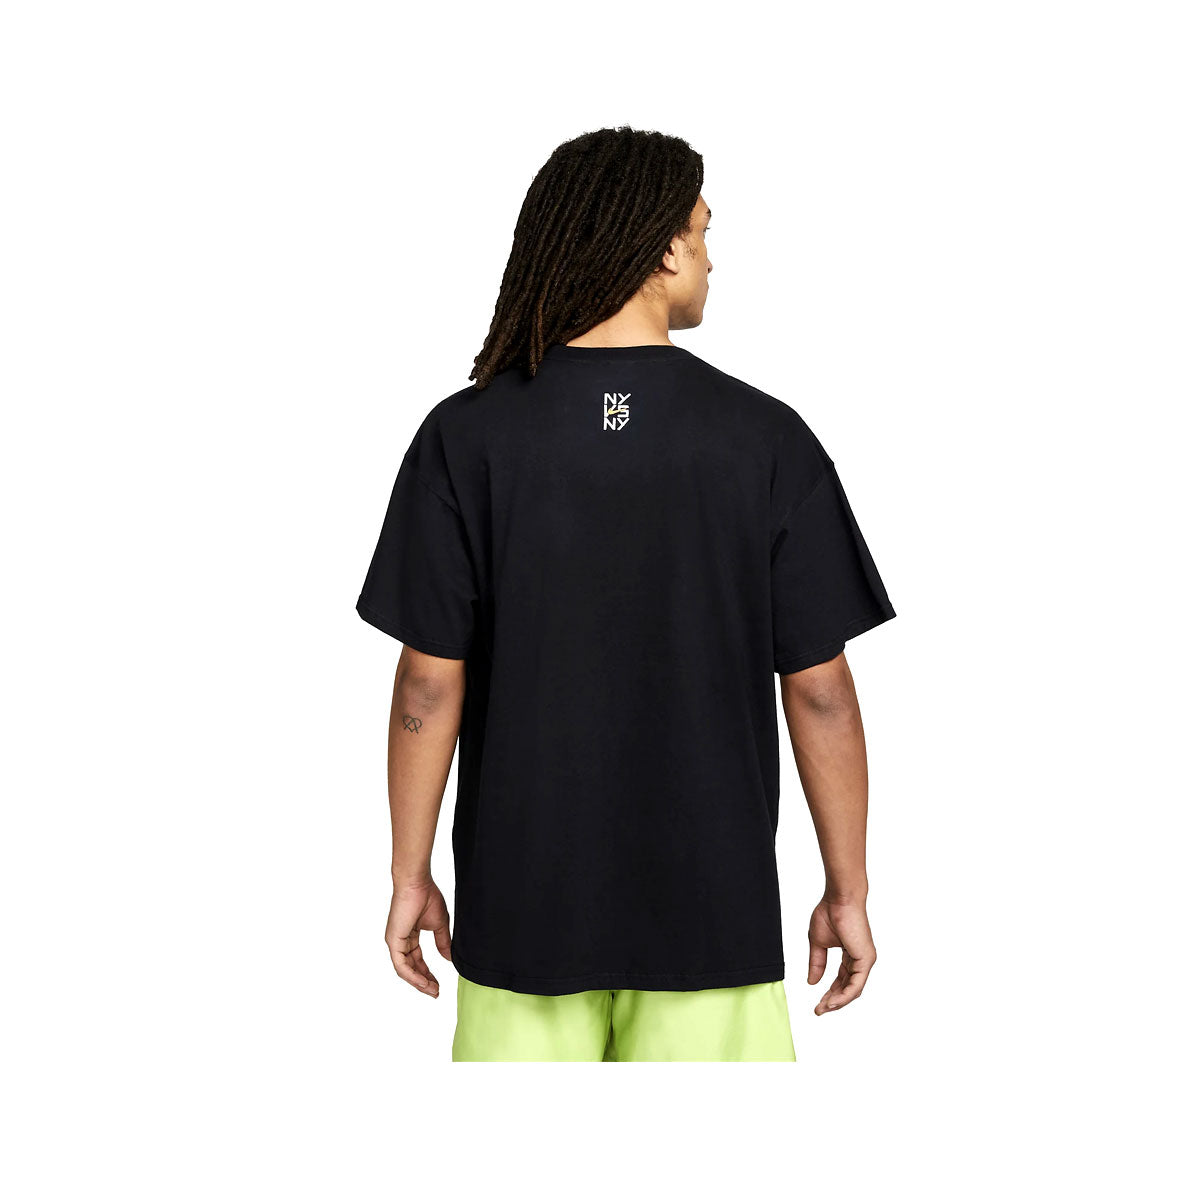 Nike Men's Sportswear NY vs NY Max 90 T-Shirt